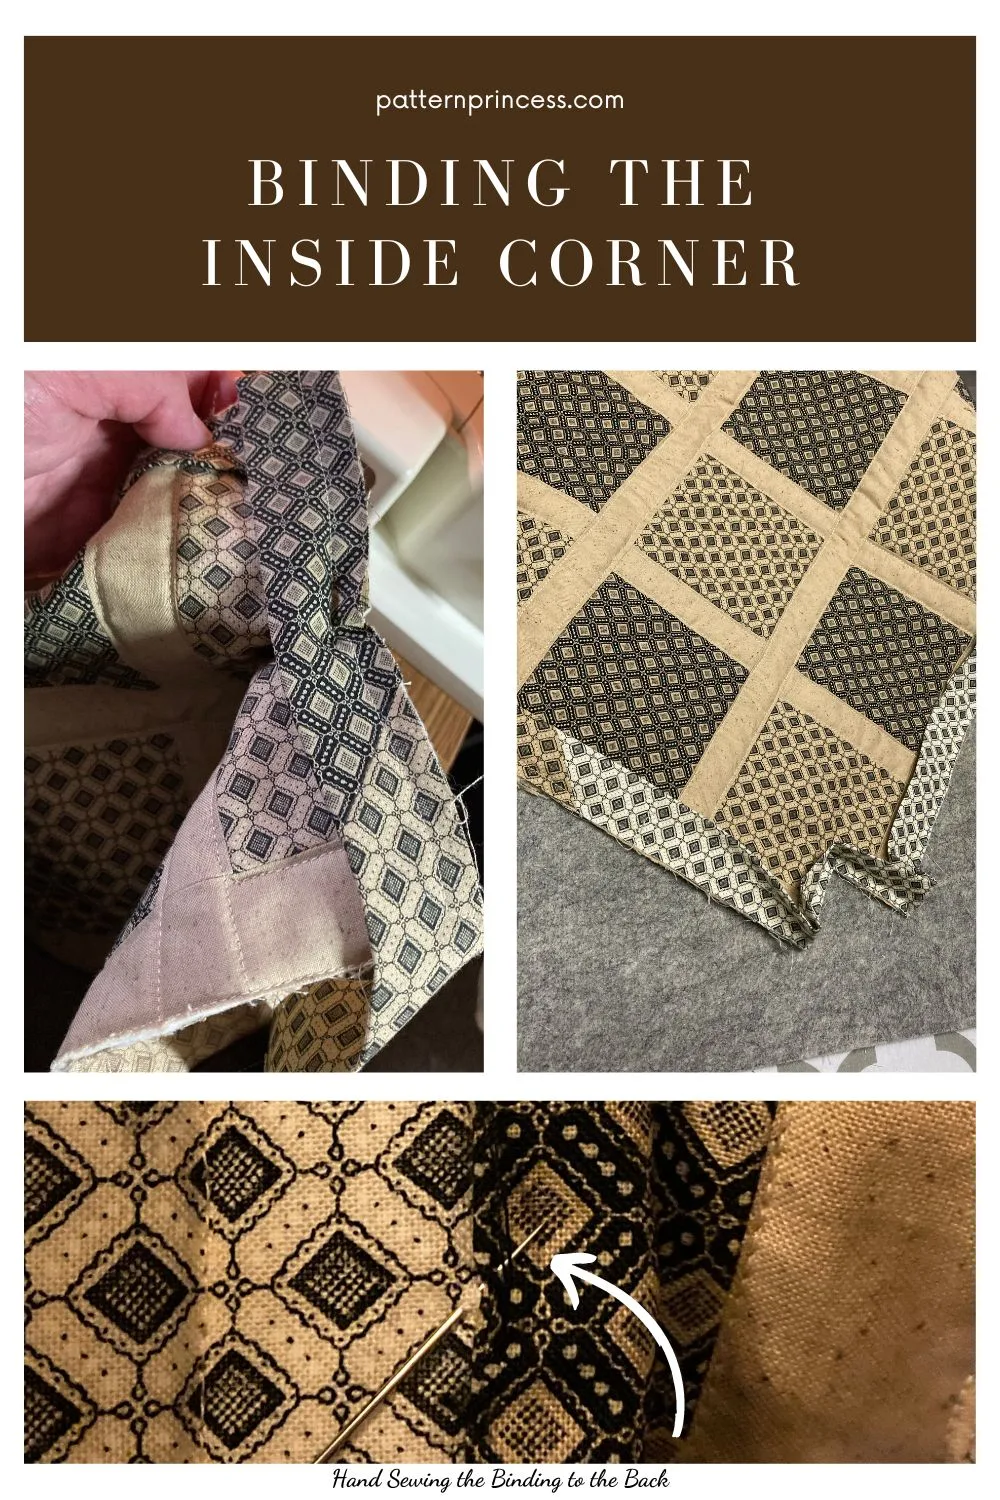 Binding the inside corner